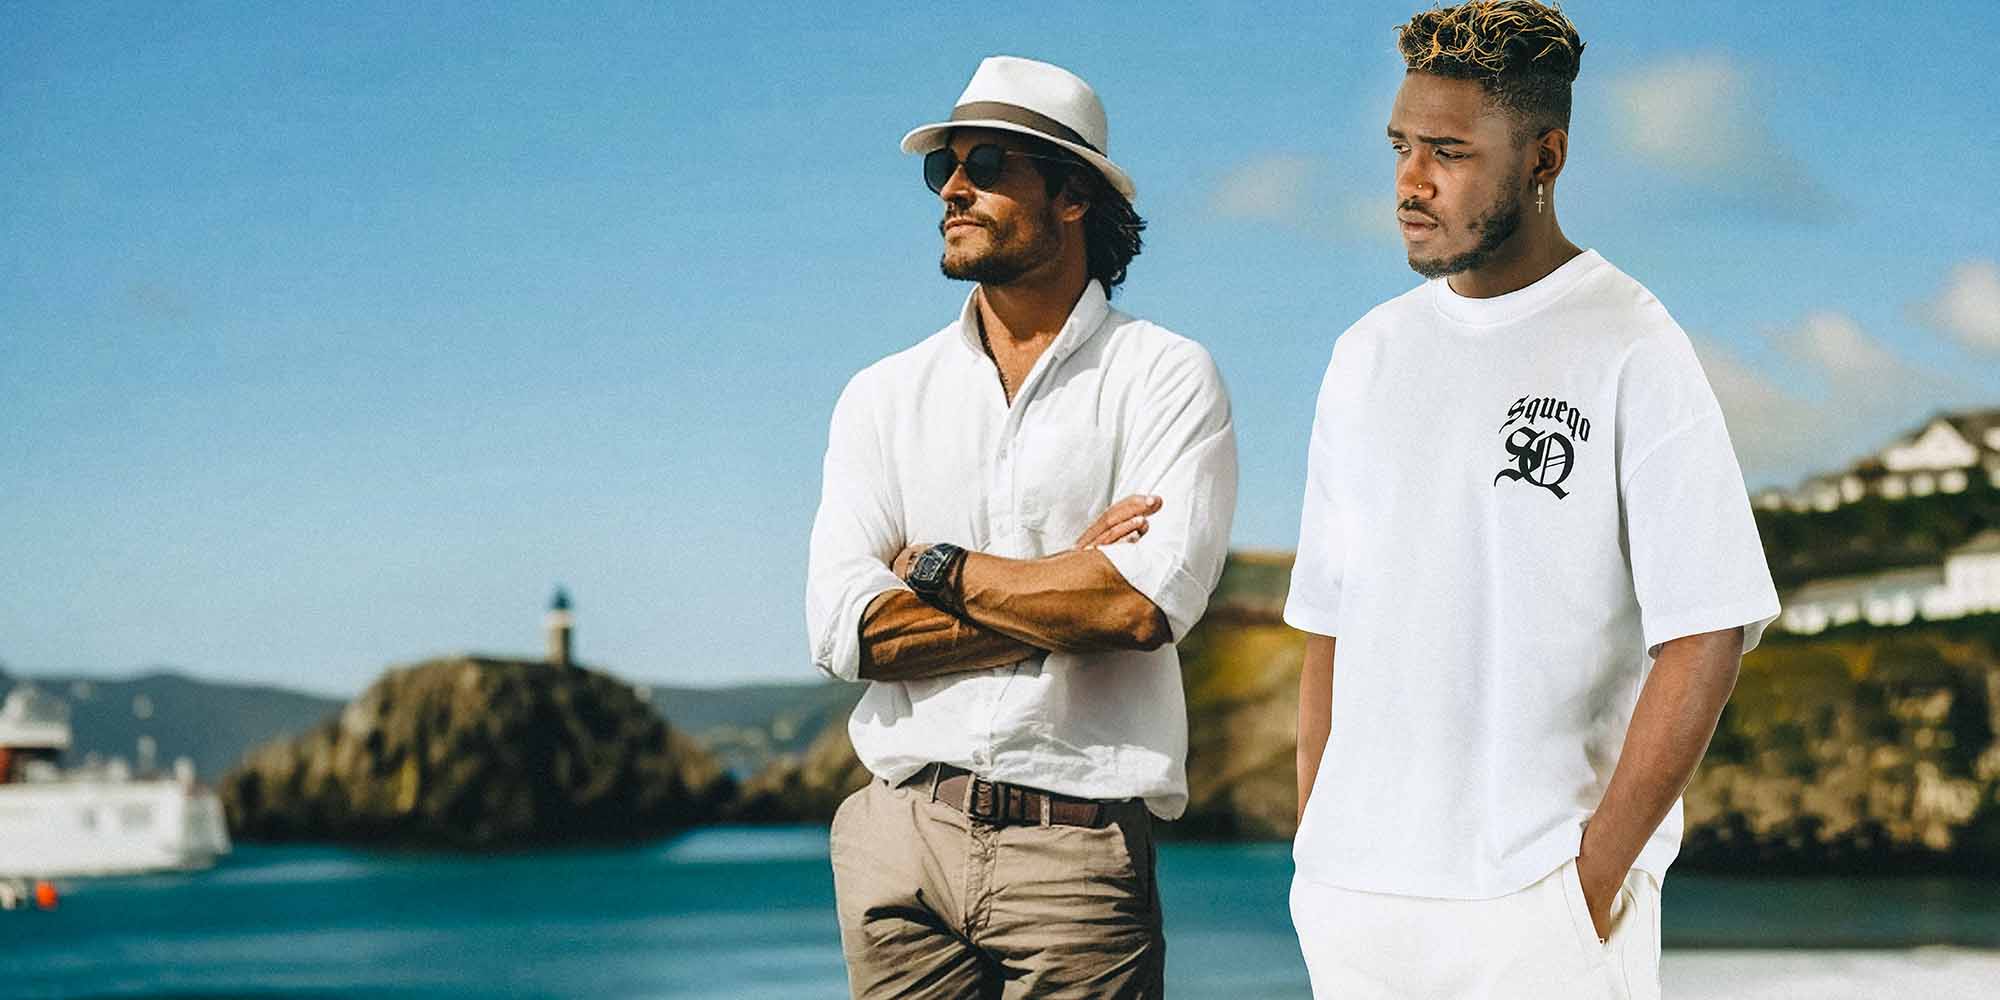 Zwei Männer in Sommeroutfits stehen an einem Küstenort, einer in einem weißen Hemd, Hut und Sonnenbrille, der andere in einem weißen T-Shirt mit Squeqo-Monogramm, beide blicken in die Ferne.